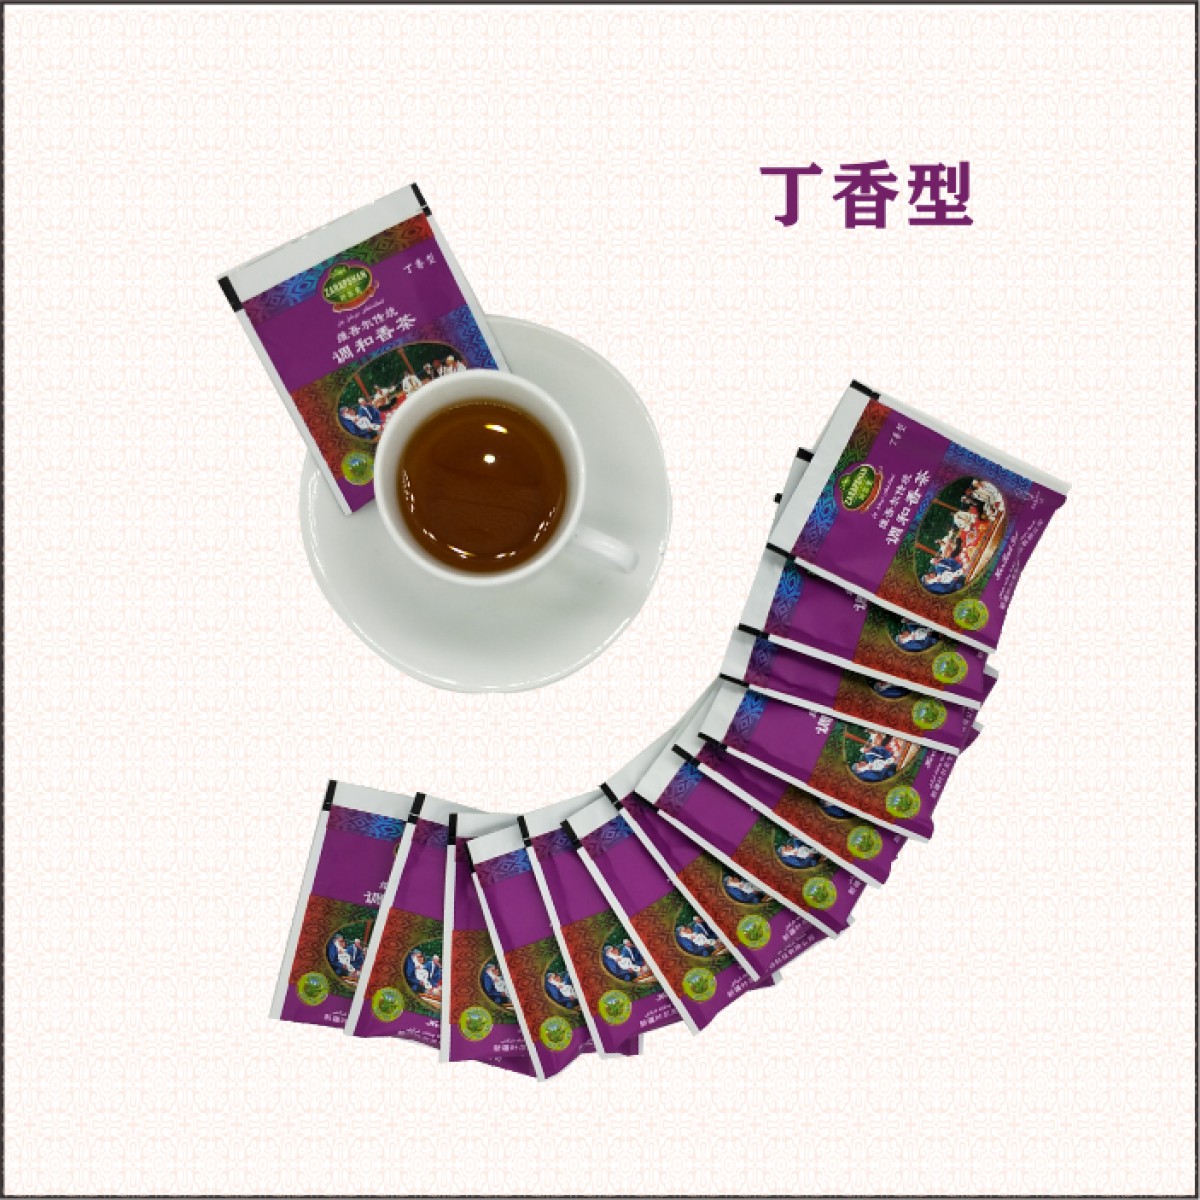 叶尔羌茶叶新疆维吾尔传统调和香茶袋泡茶包(丁香型)内含(2克x24包)